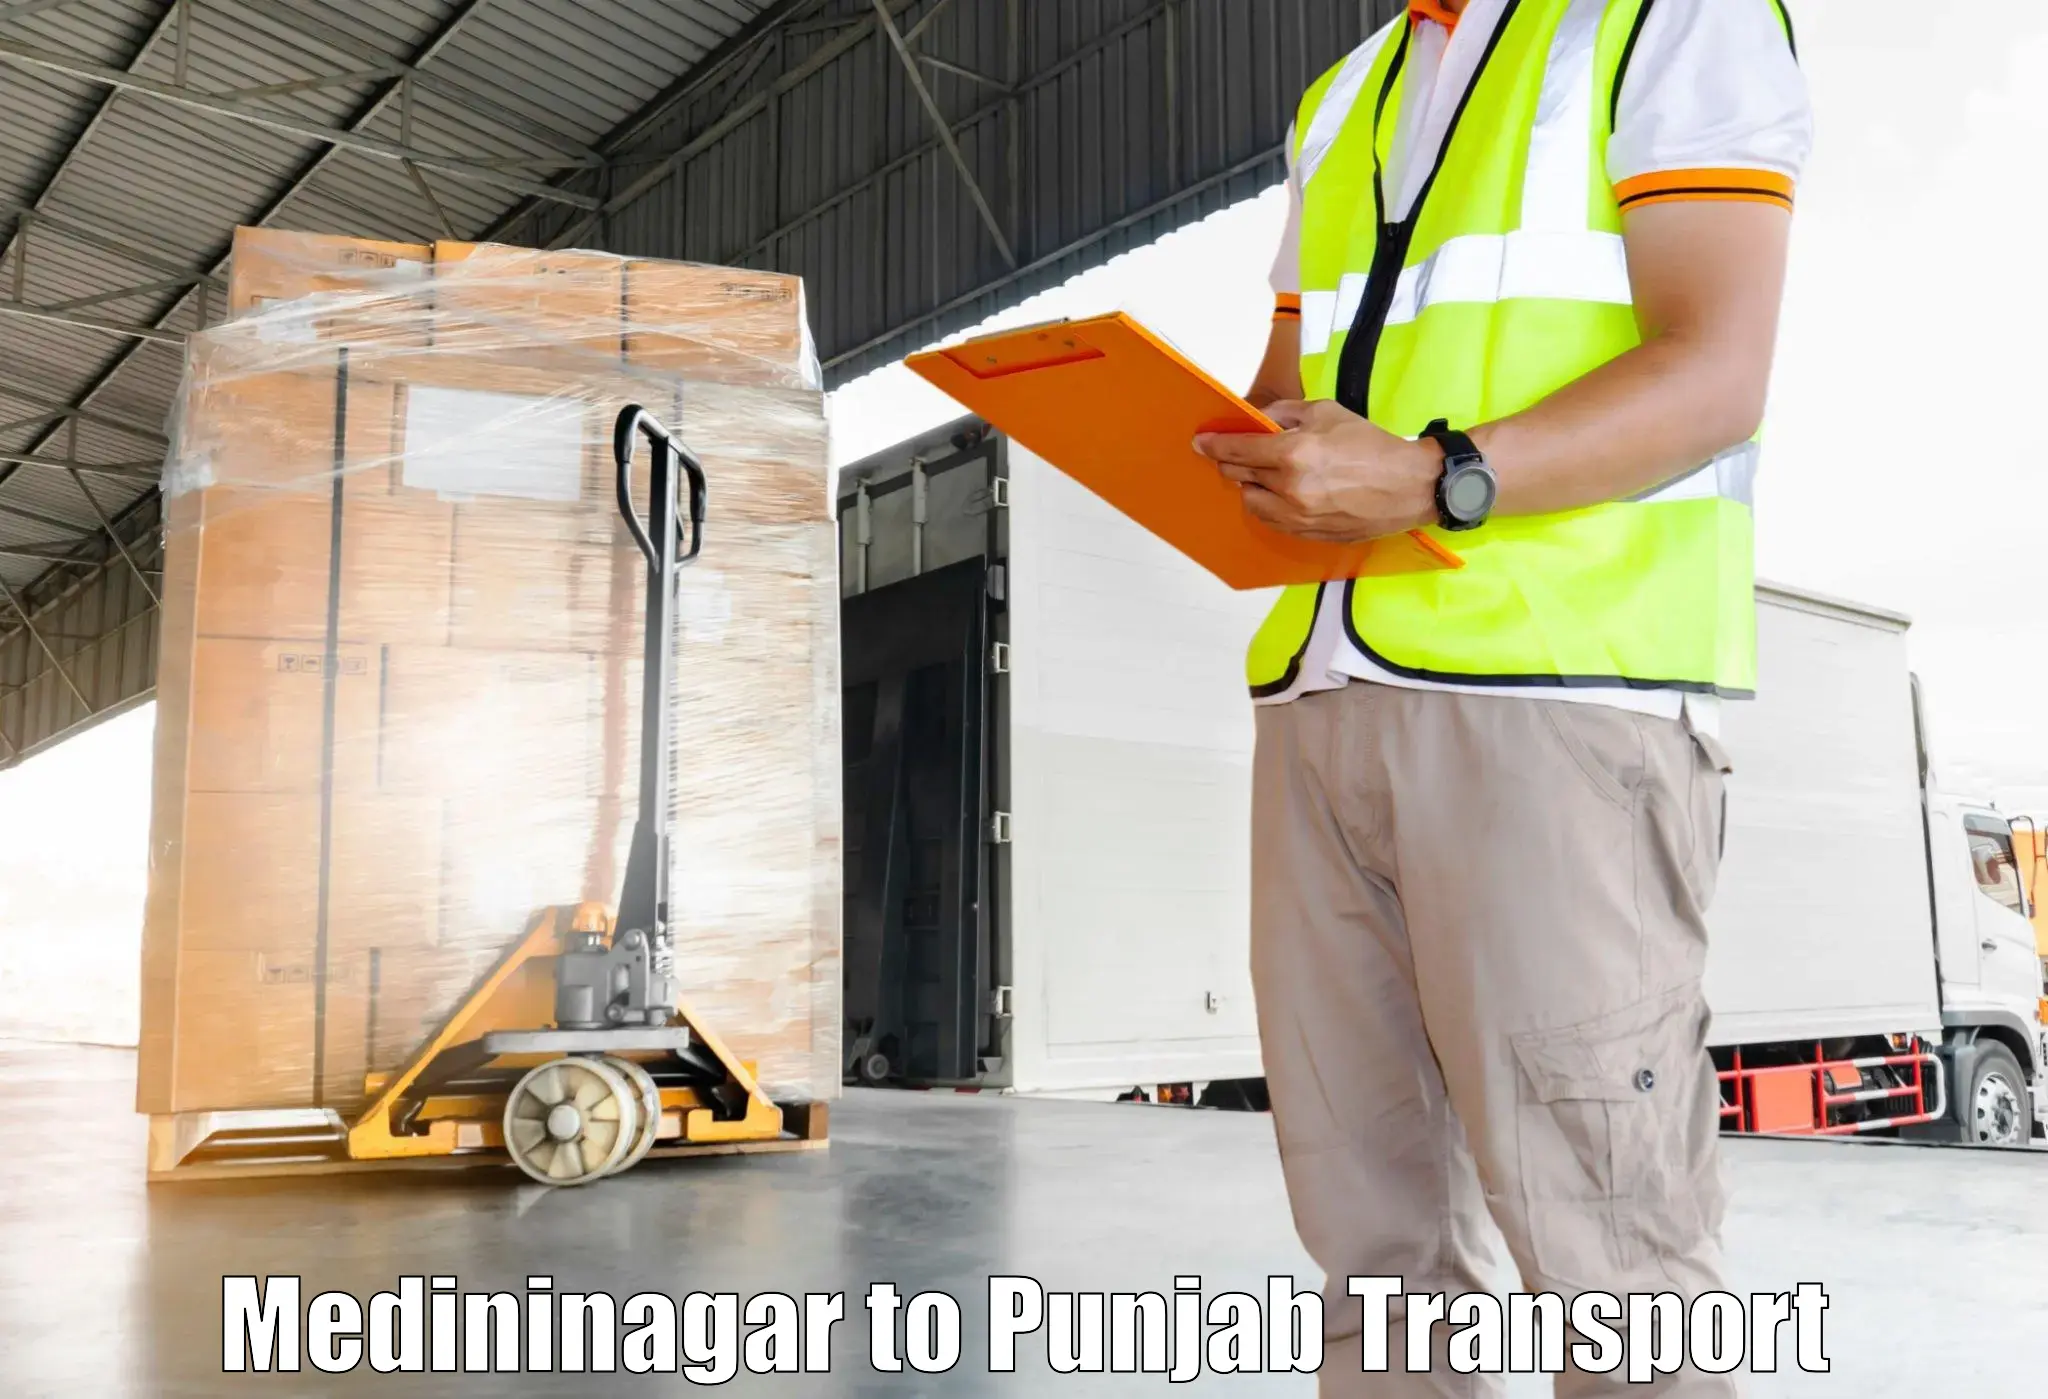 Express transport services Medininagar to Dinanagar